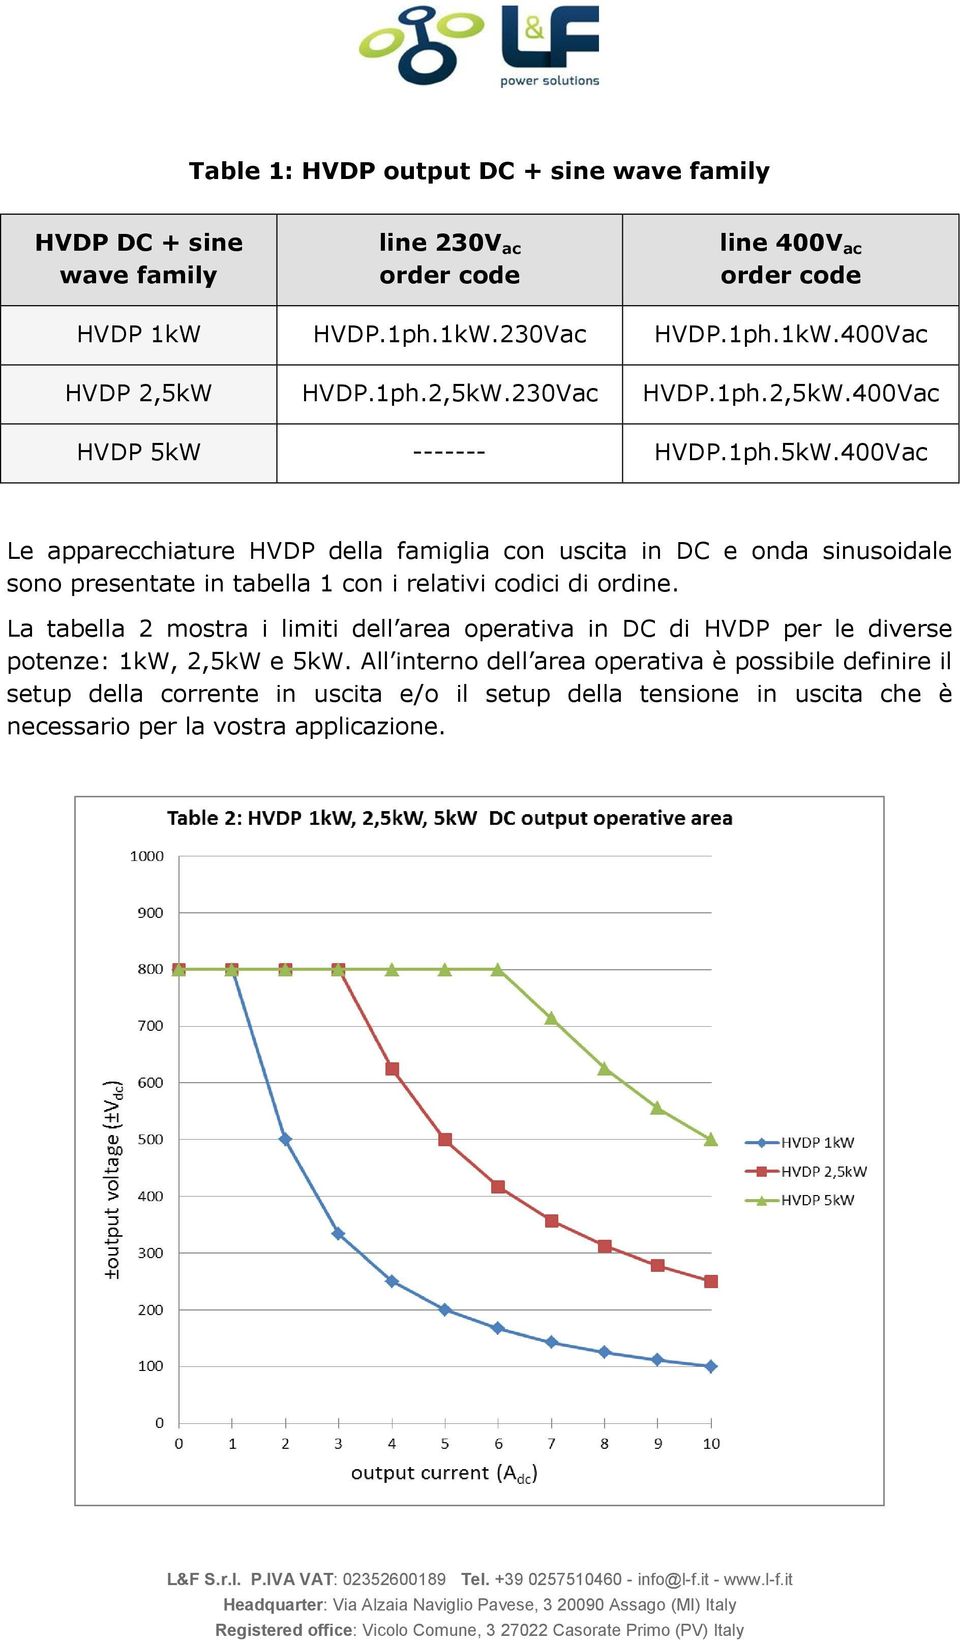 La tabella 2 mostra i limiti dell area operativa in DC di HVDP per le diverse potenze: 1kW, 2,5kW e 5kW.